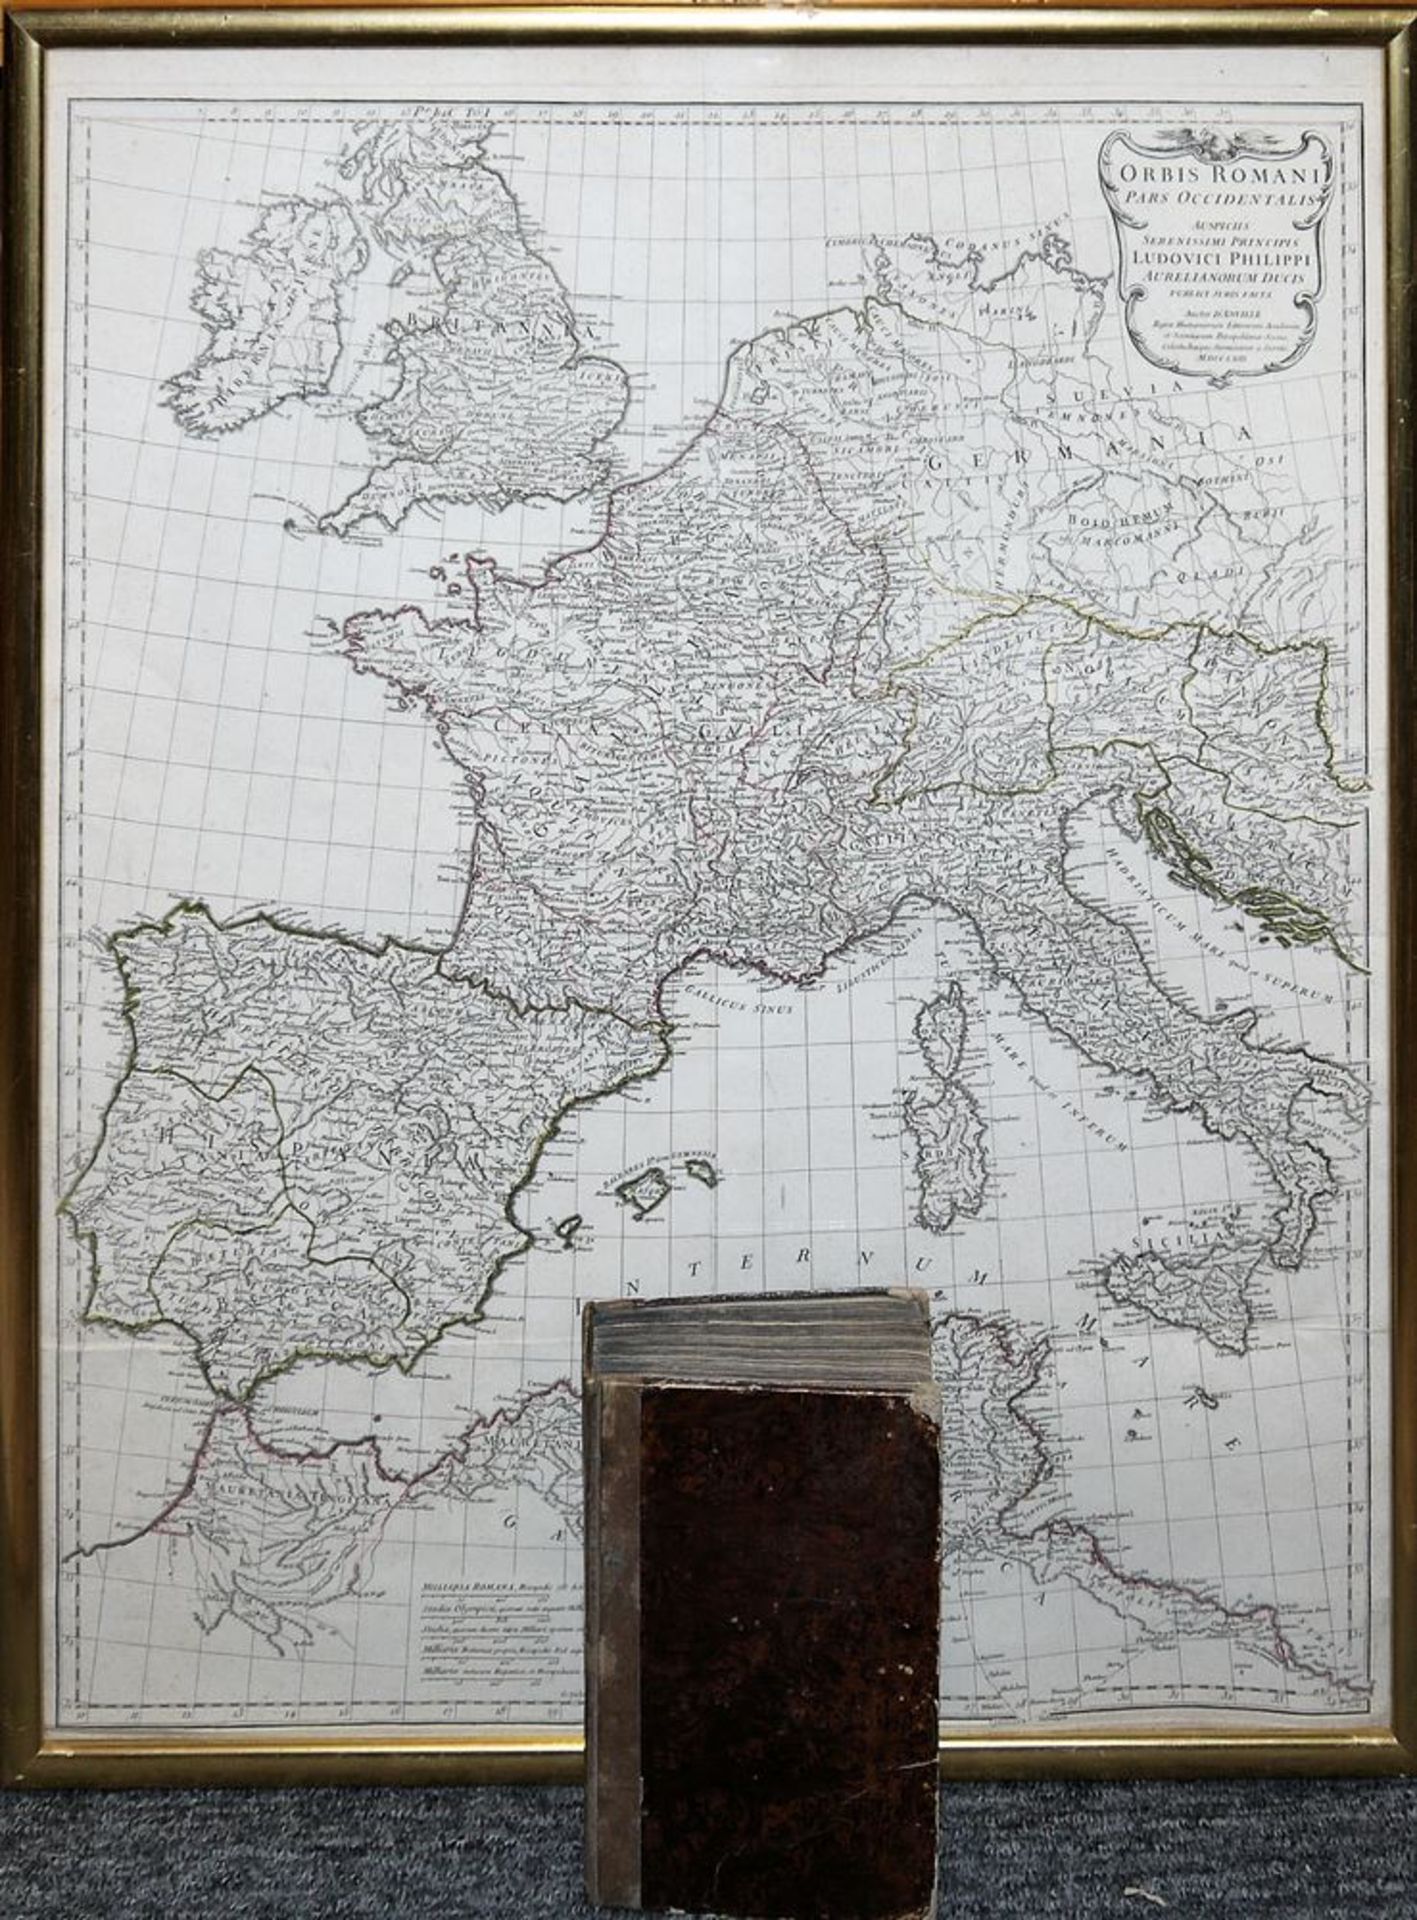 Jean Baptiste Bourguignon D'Anville, "Orbis Romanis Pars Occidentalis...", copper engraved map of 1